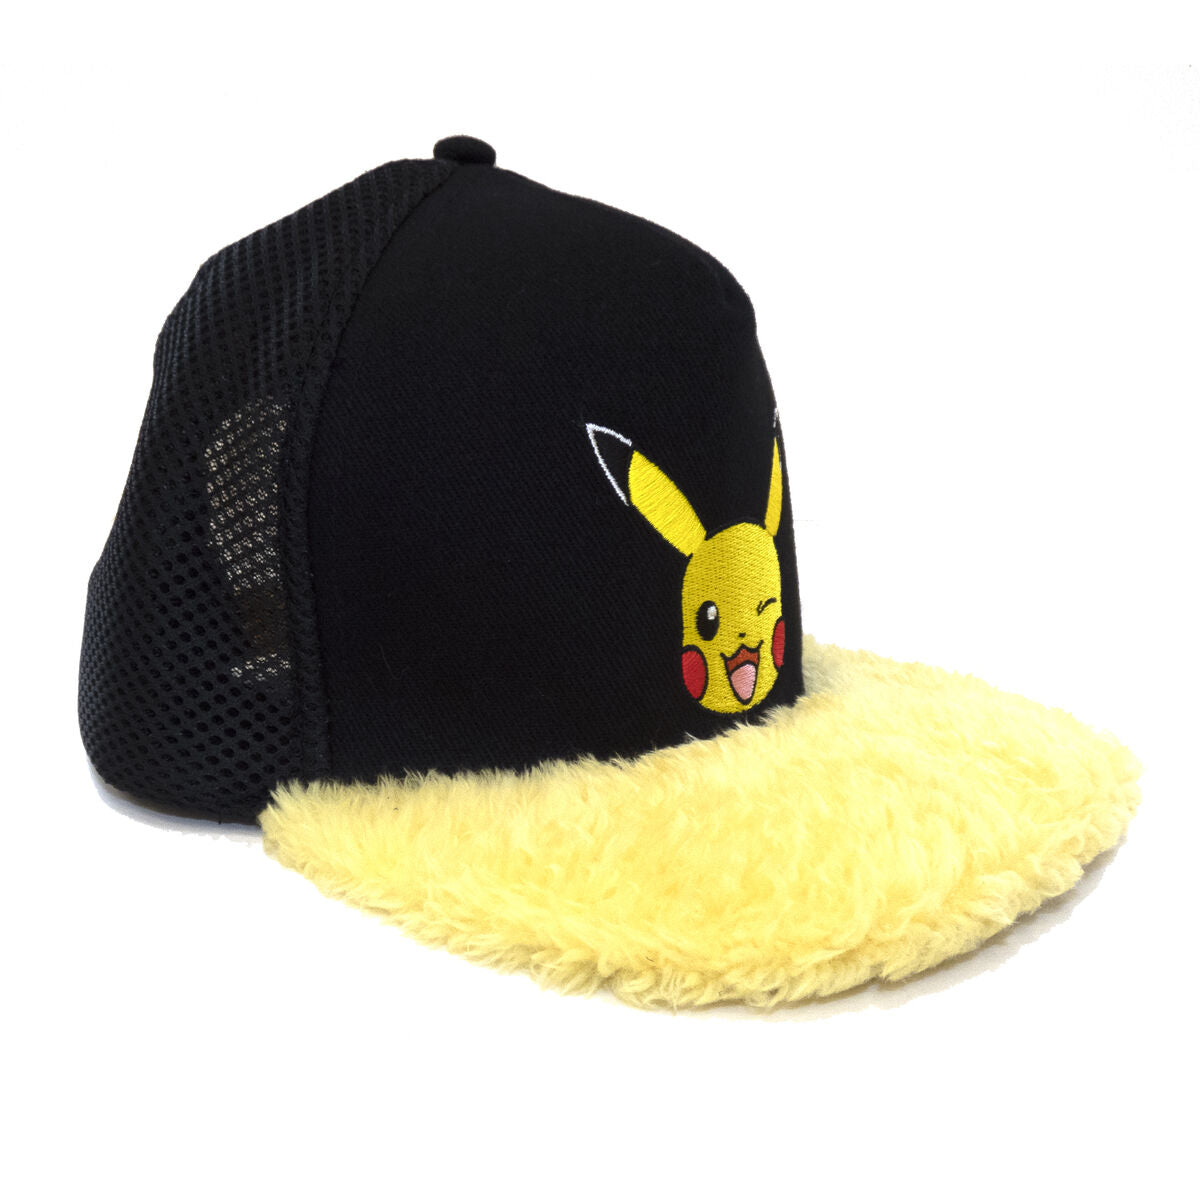 Casquette Unisex Pokémon Pikachu Wink Jaune Noir Taille unique